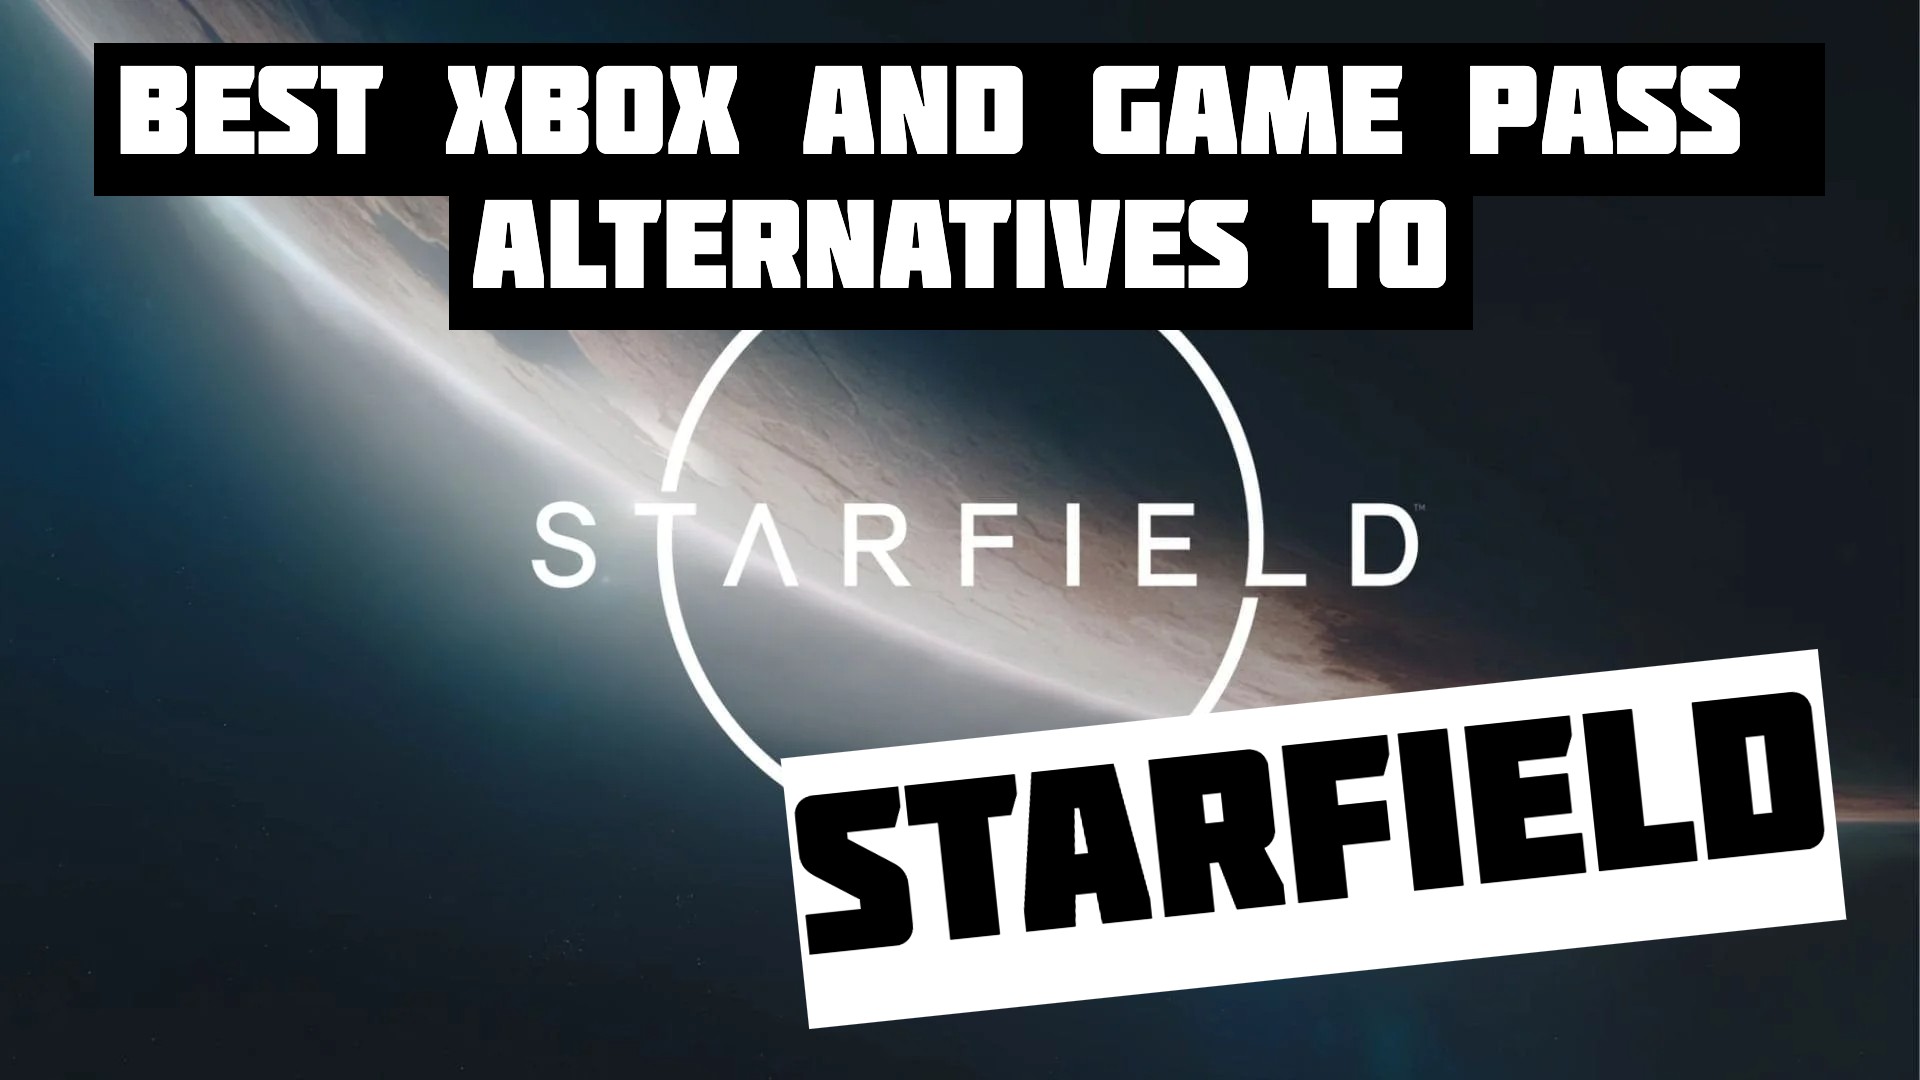 Starfield metacritic Update : r/Starfield